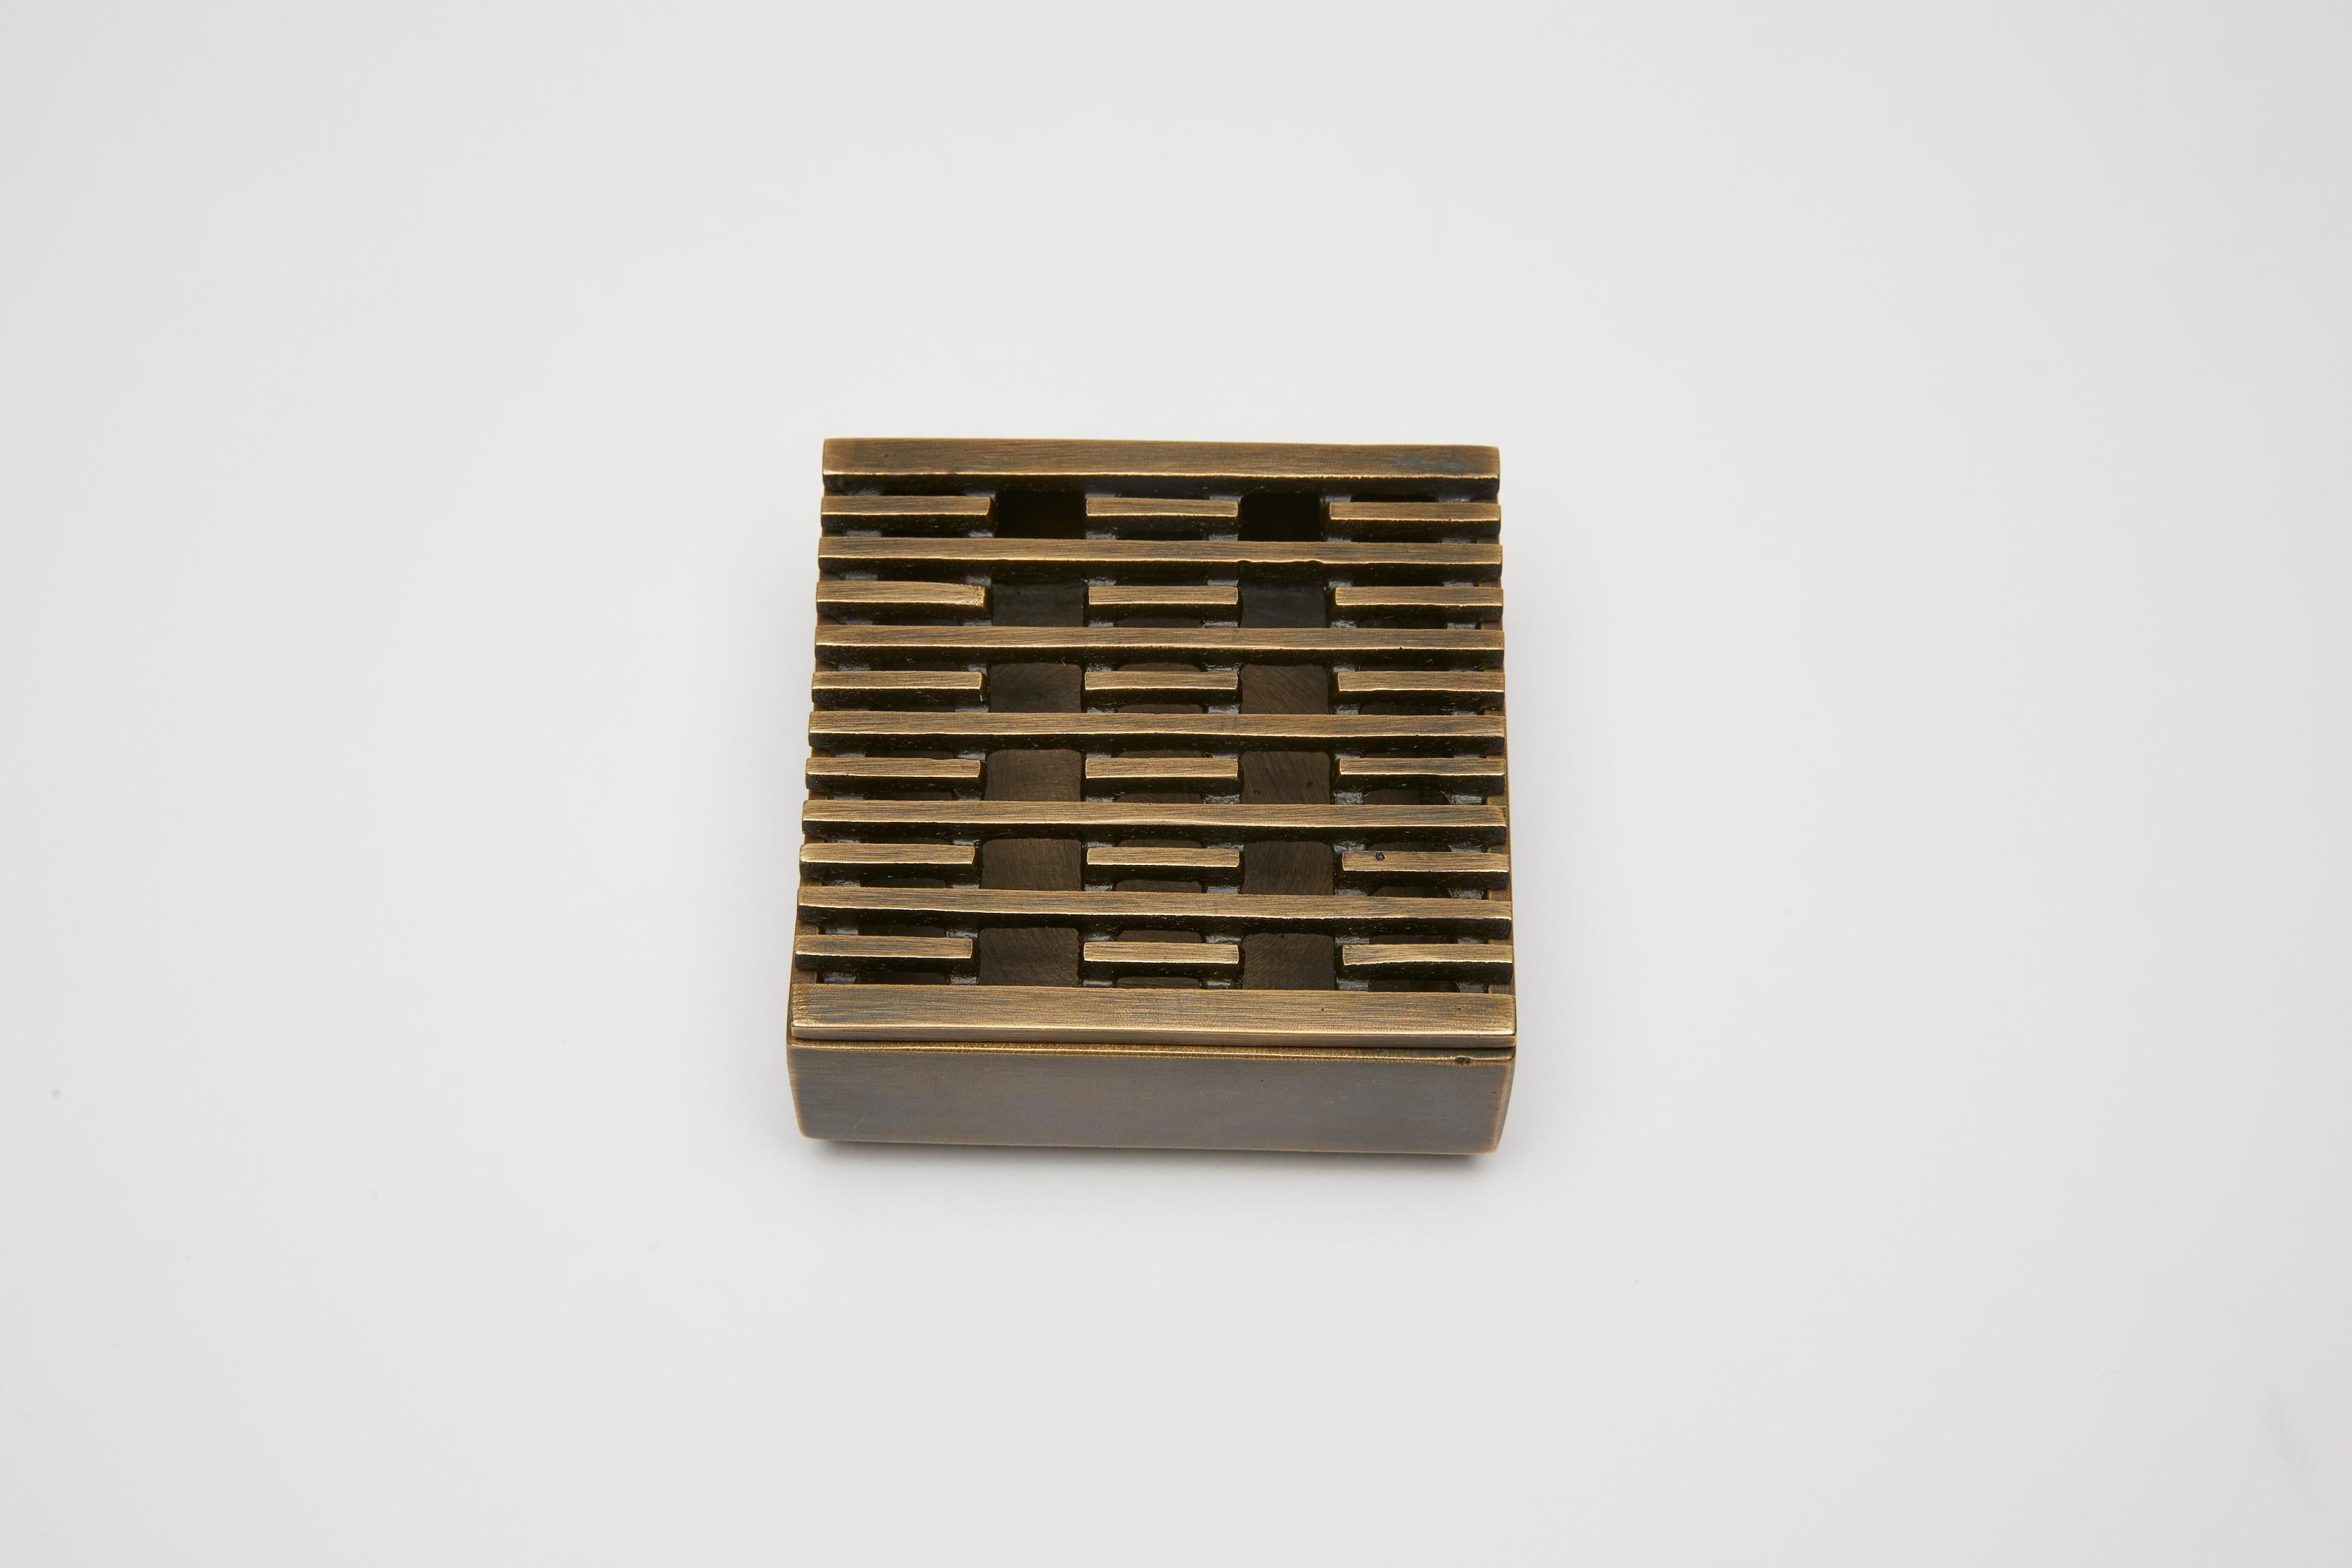 La boîte à encens ou le cendrier en bronze est conçu avec un dessus amovible à motifs. Le motif utilisé ici, une répétition de lignes et de vides, a été développé par Reda Amalou et est utilisé dans plusieurs pièces de la collection Reda Amalou.

La